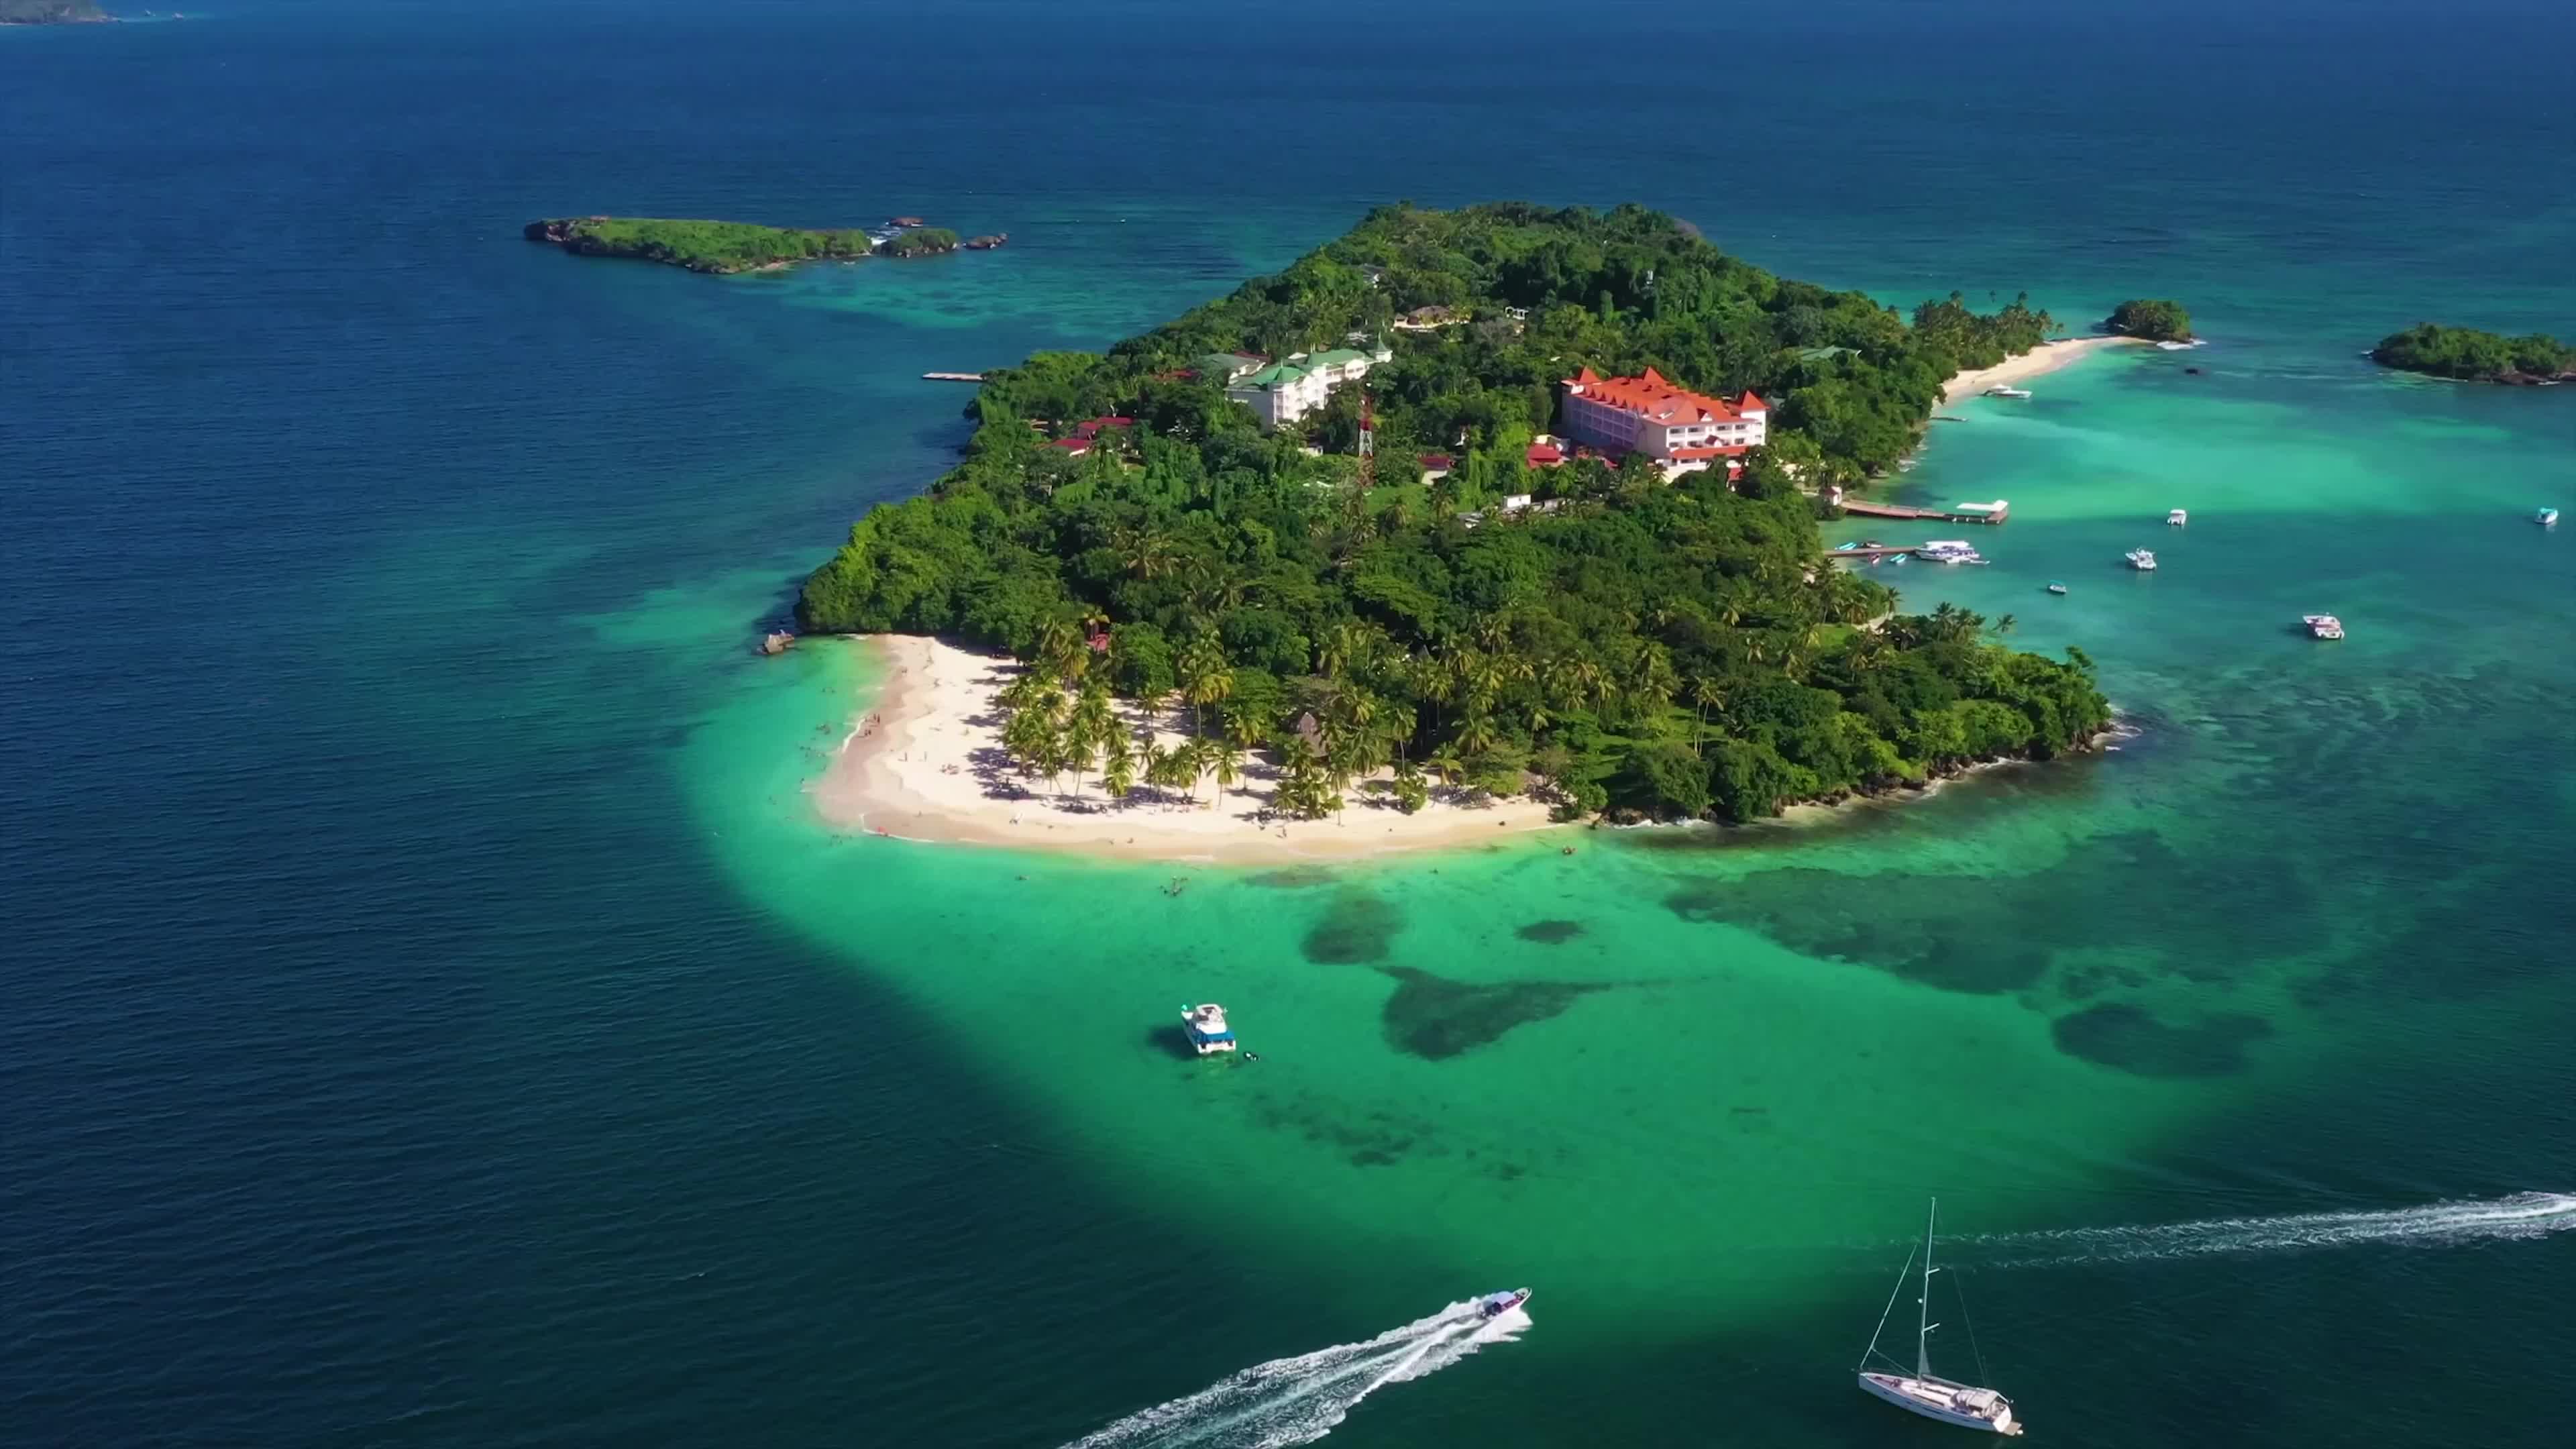 100,000+张最精彩的“小岛”图片 · 100%免费下载 · Pexels素材图片